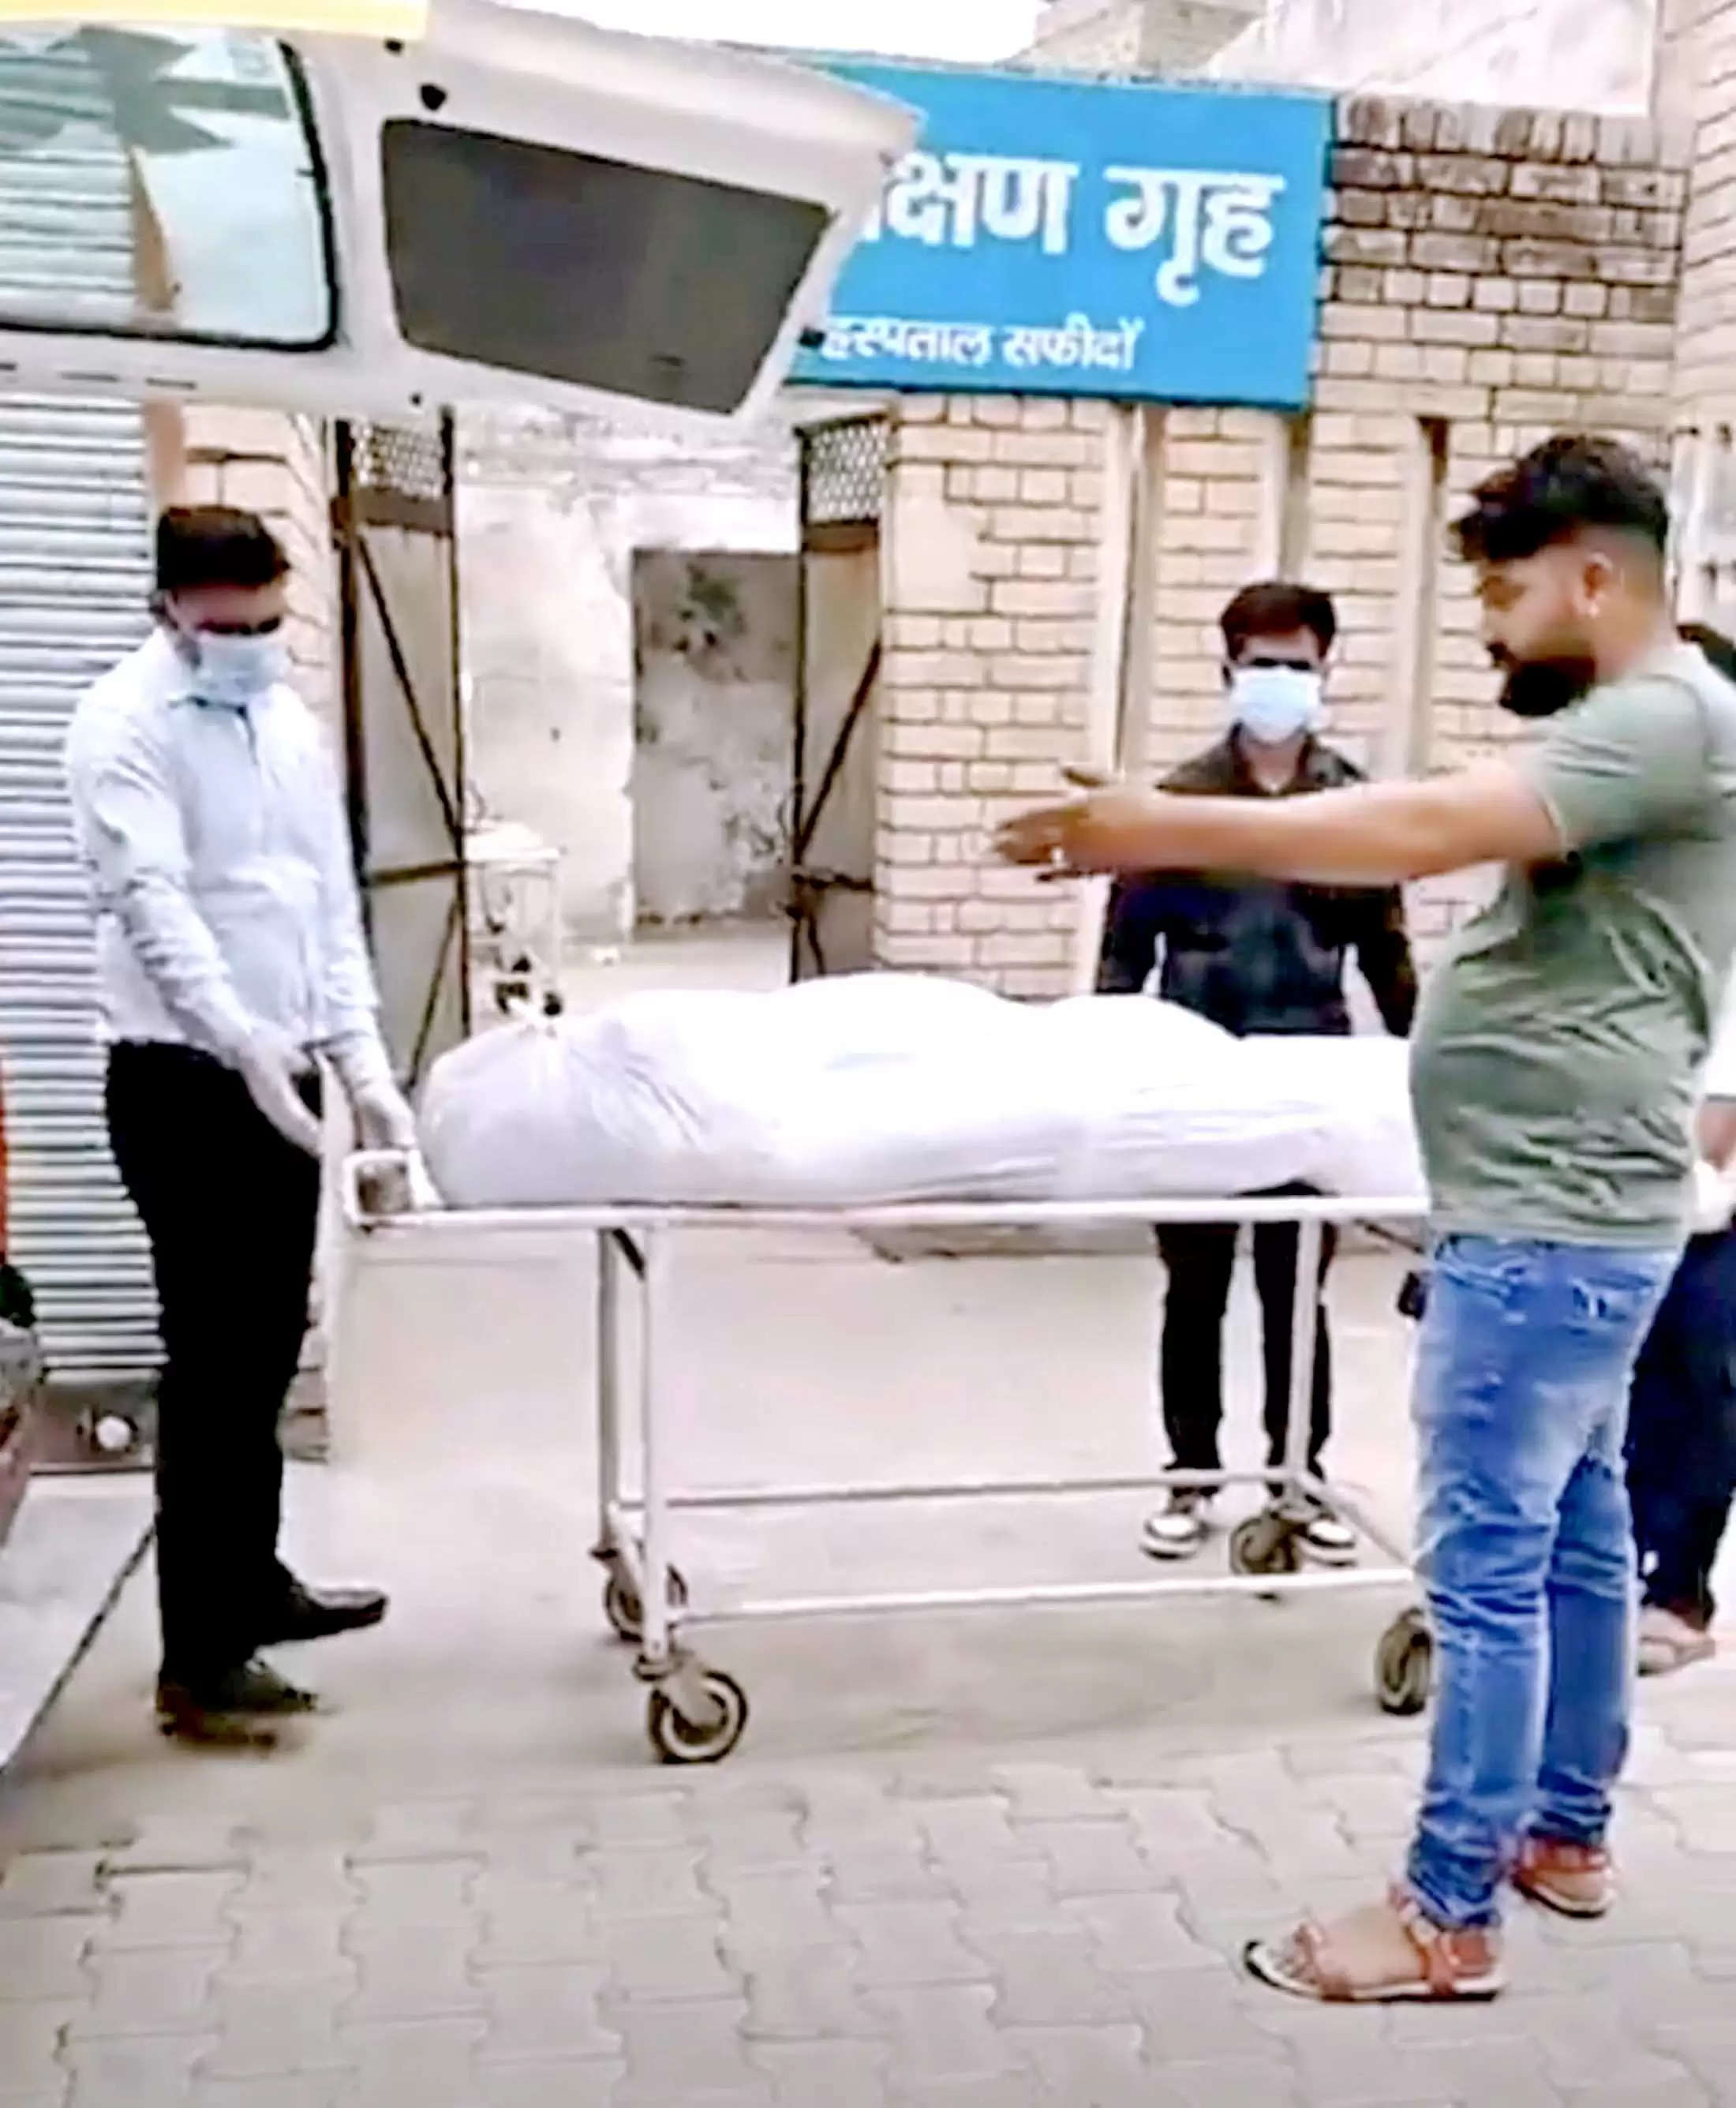  सफीदों के नागरिक अस्पताल में फ्रीज खराब होने से खराब हुआ शव